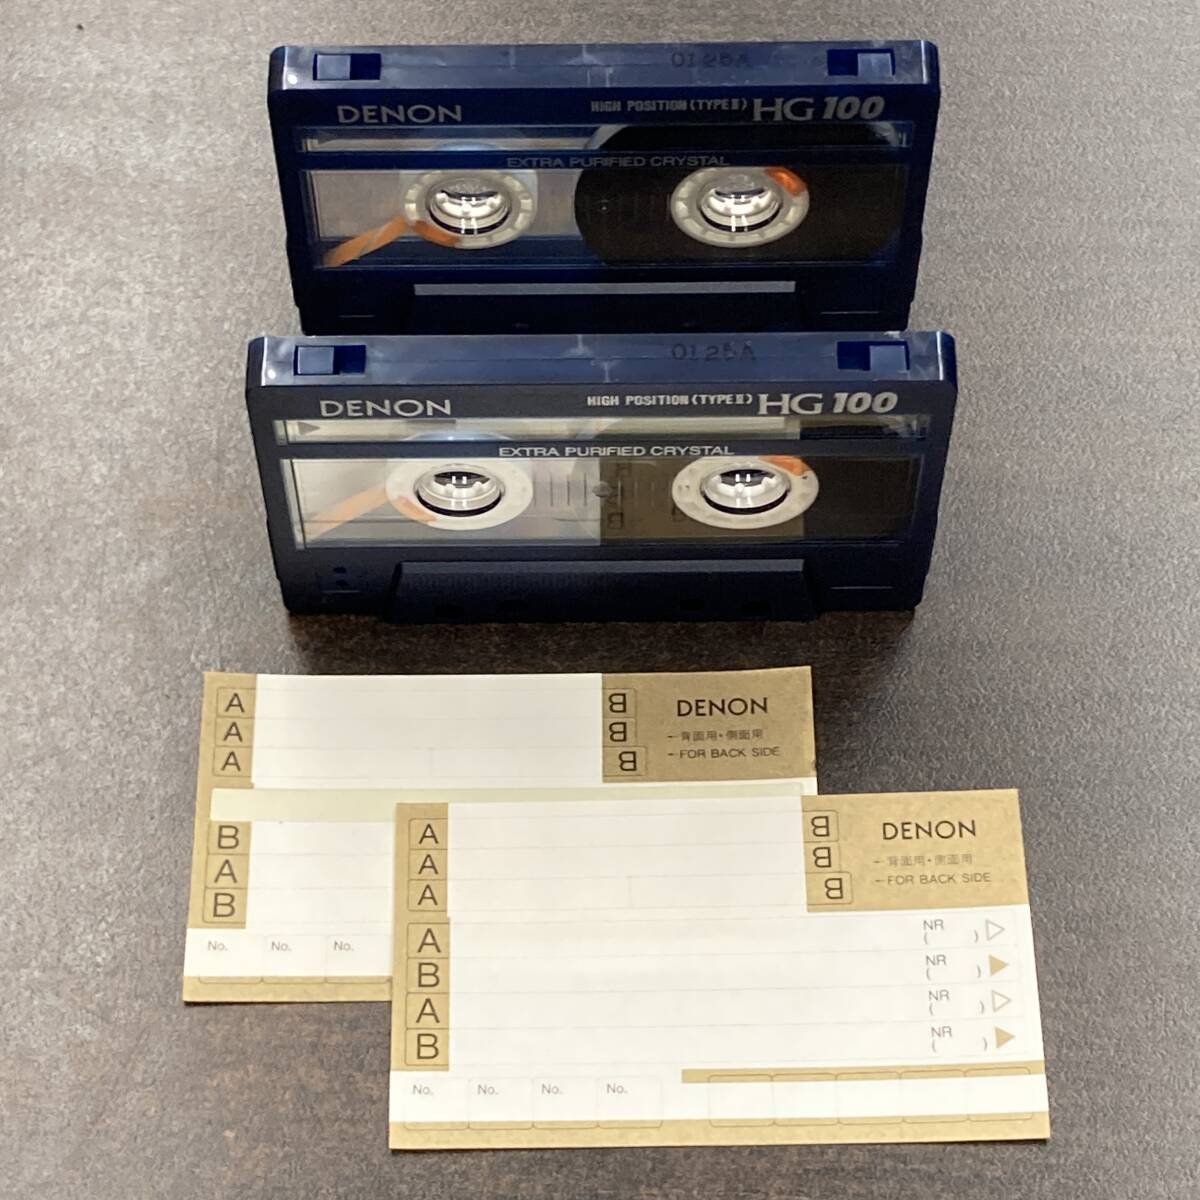 1909BT Denon HG 100 minute Hi Posi 2 ps cassette tape /Two DENON HG 100 Type II High Position Audio Cassette